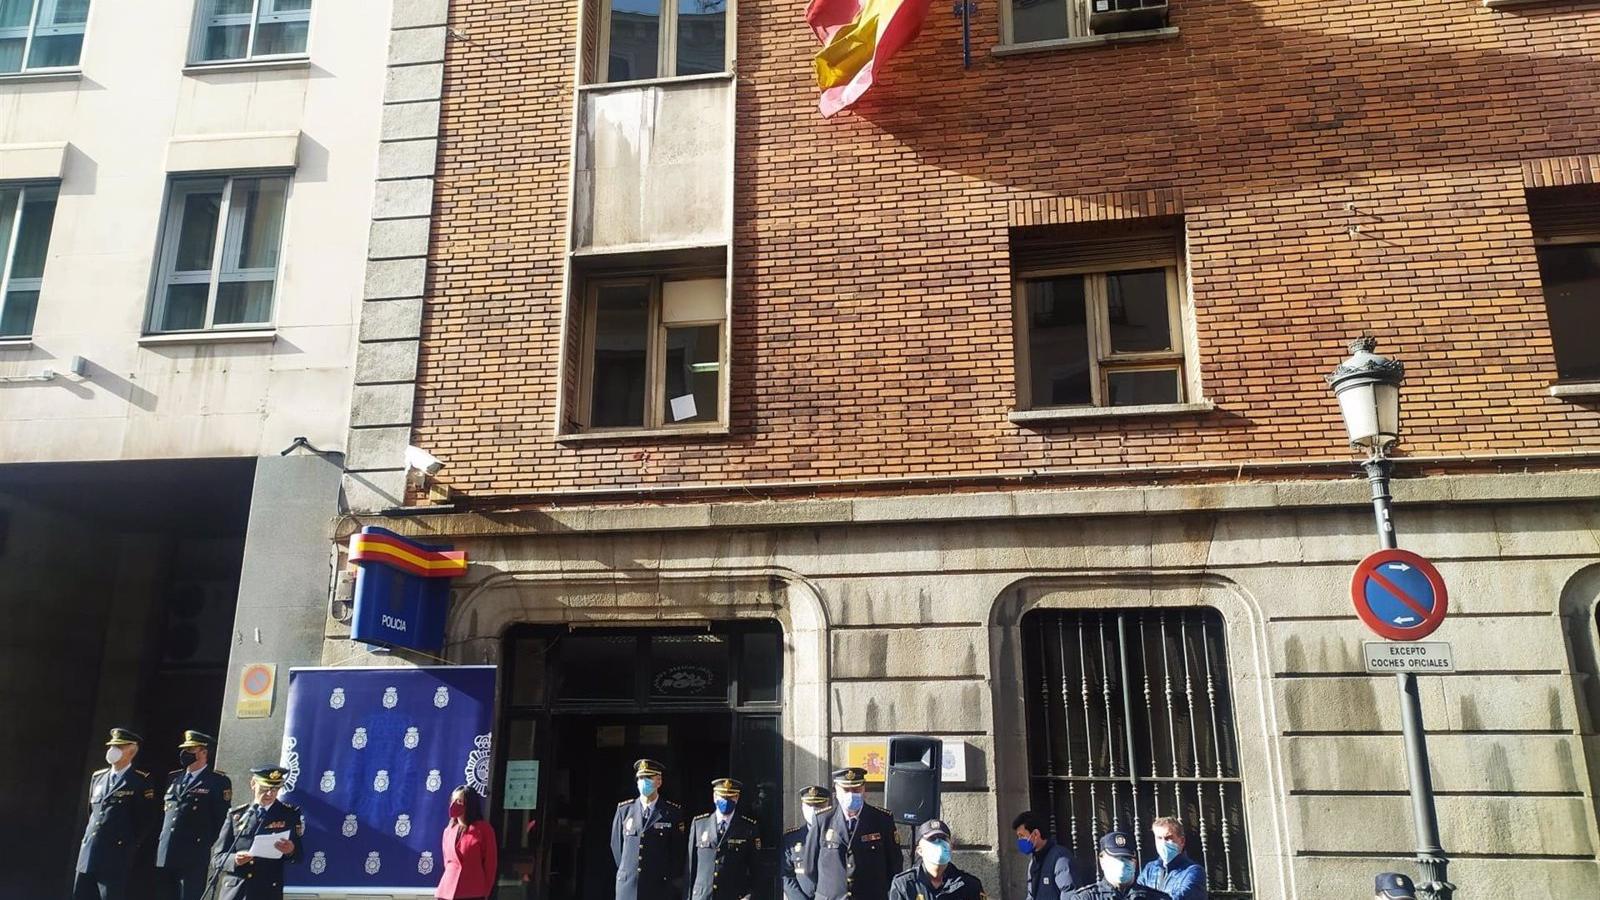 Empiezan las obras de remodelación de la mayor comisaría de distrito de España, la de Leganitos